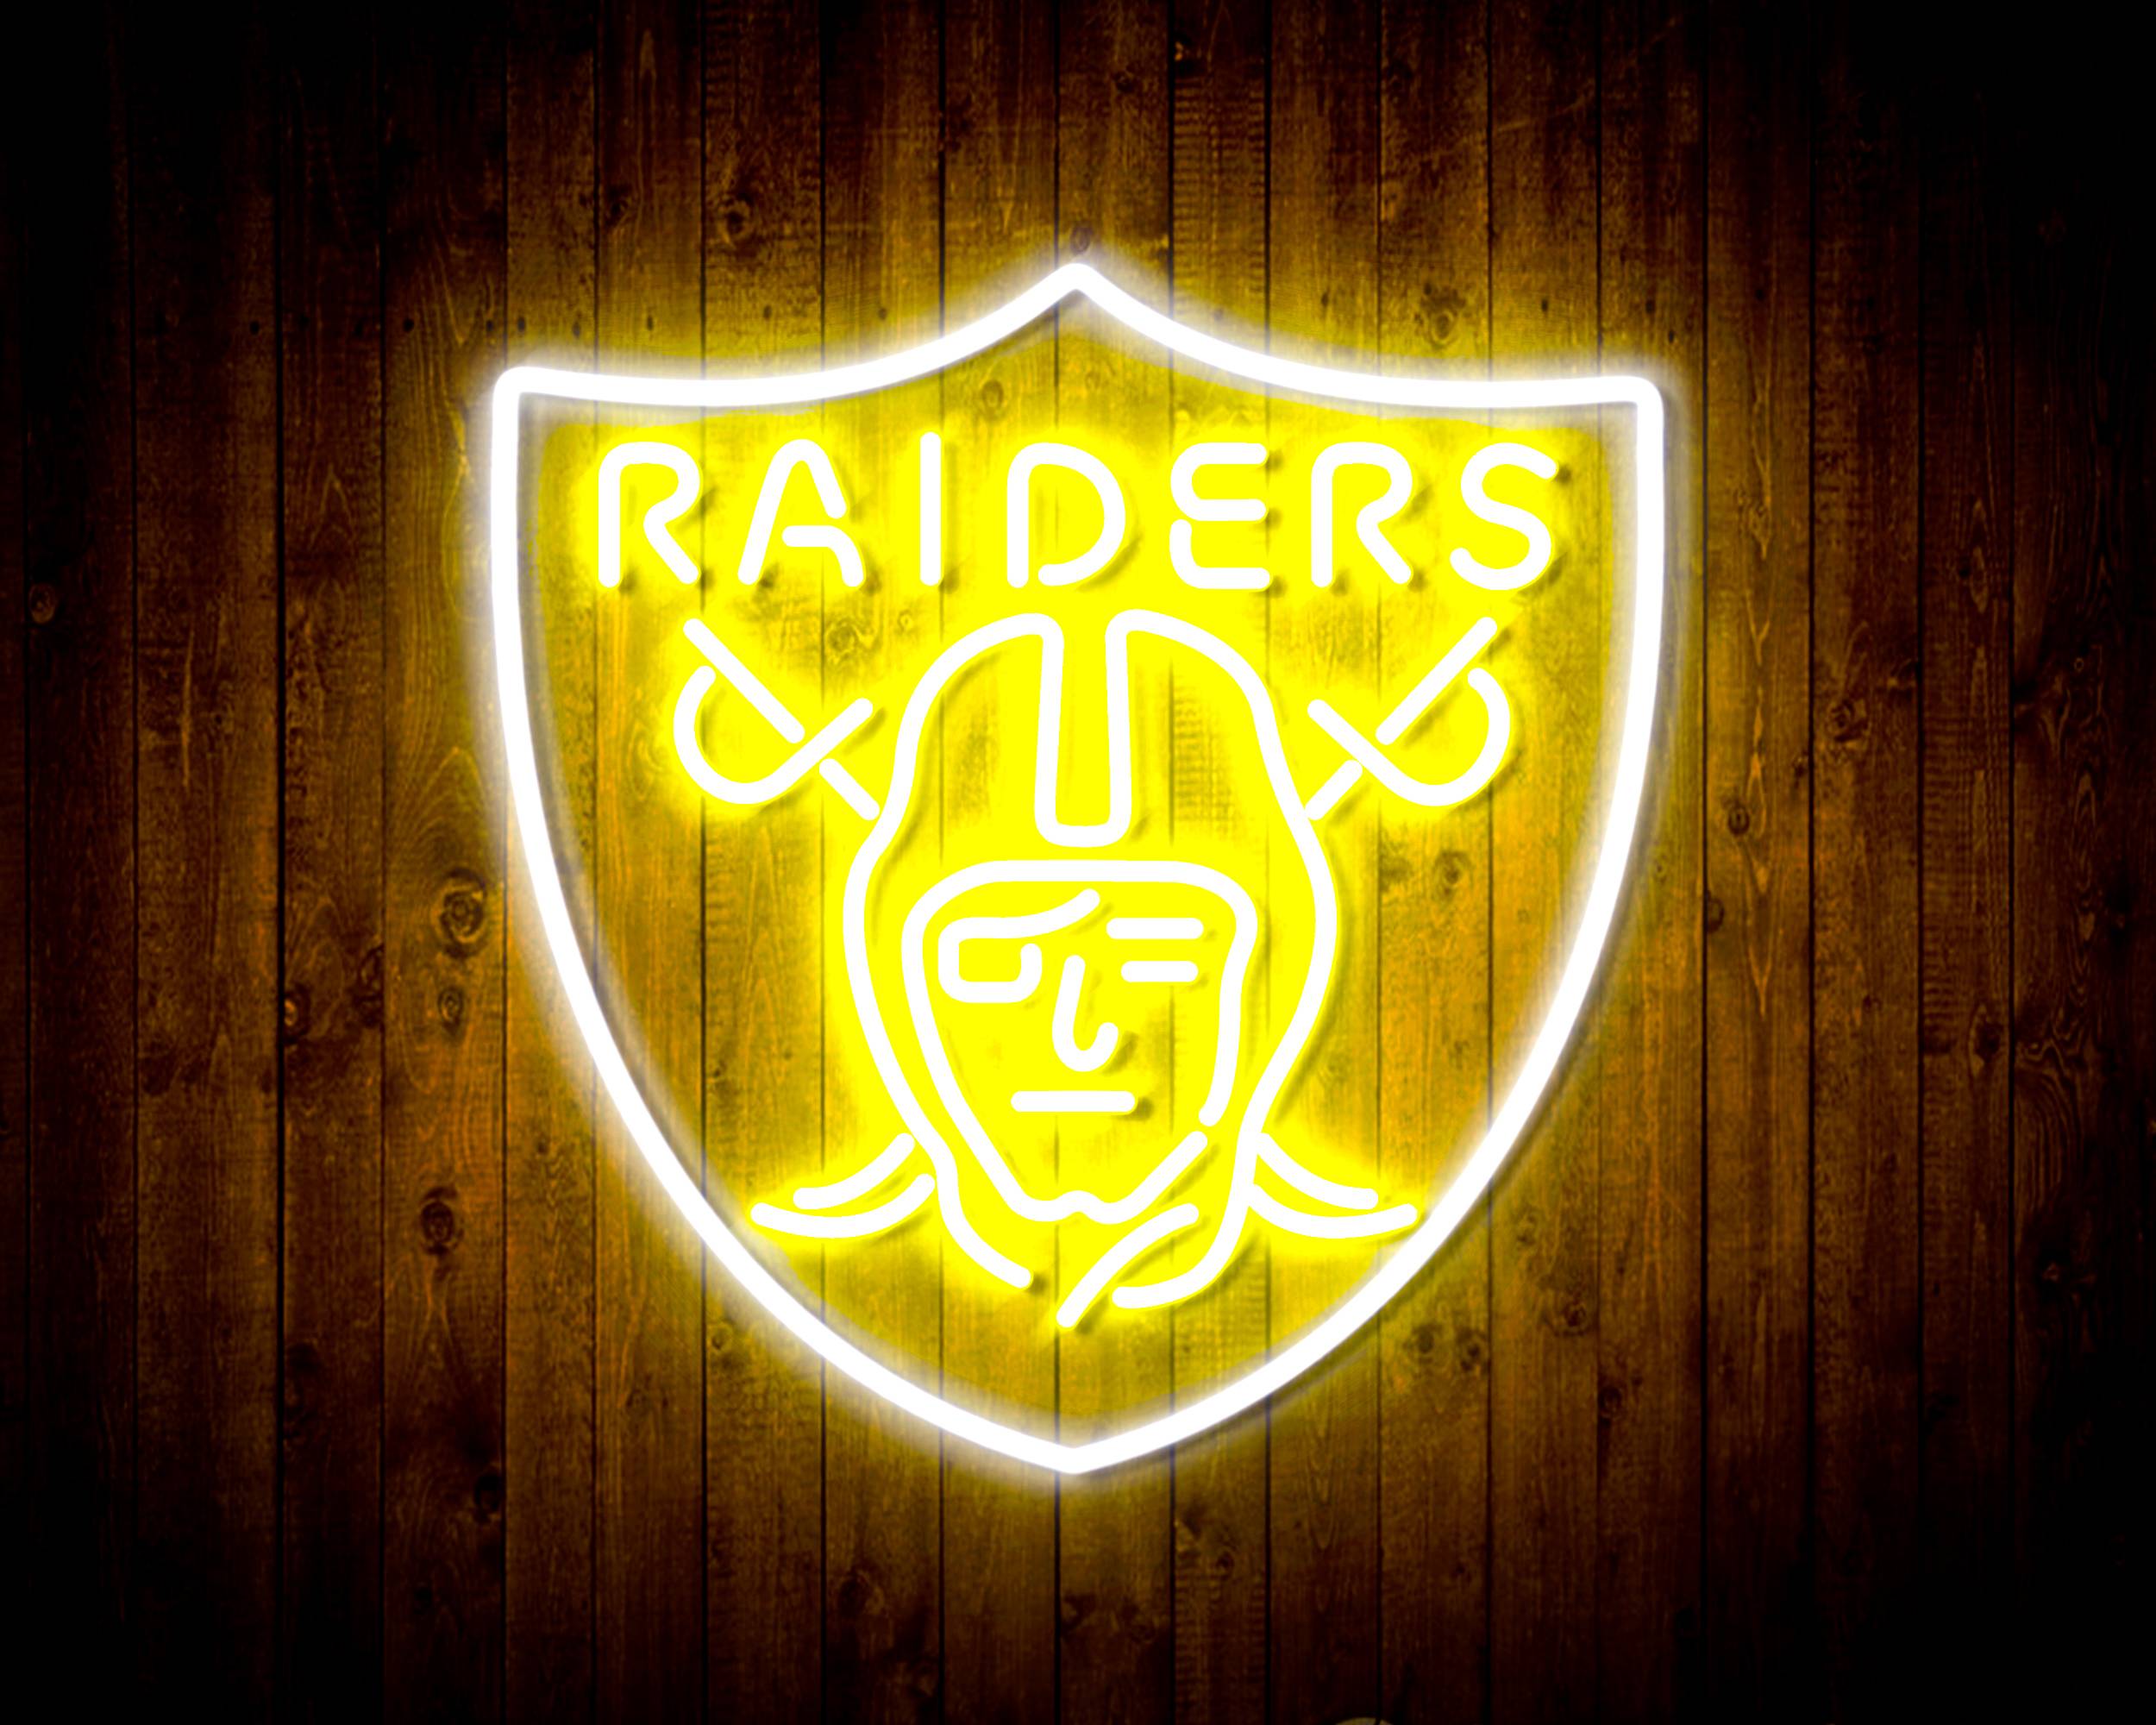 Las Vegas Raiders LED Lighted Sign - On Sale - Bed Bath & Beyond